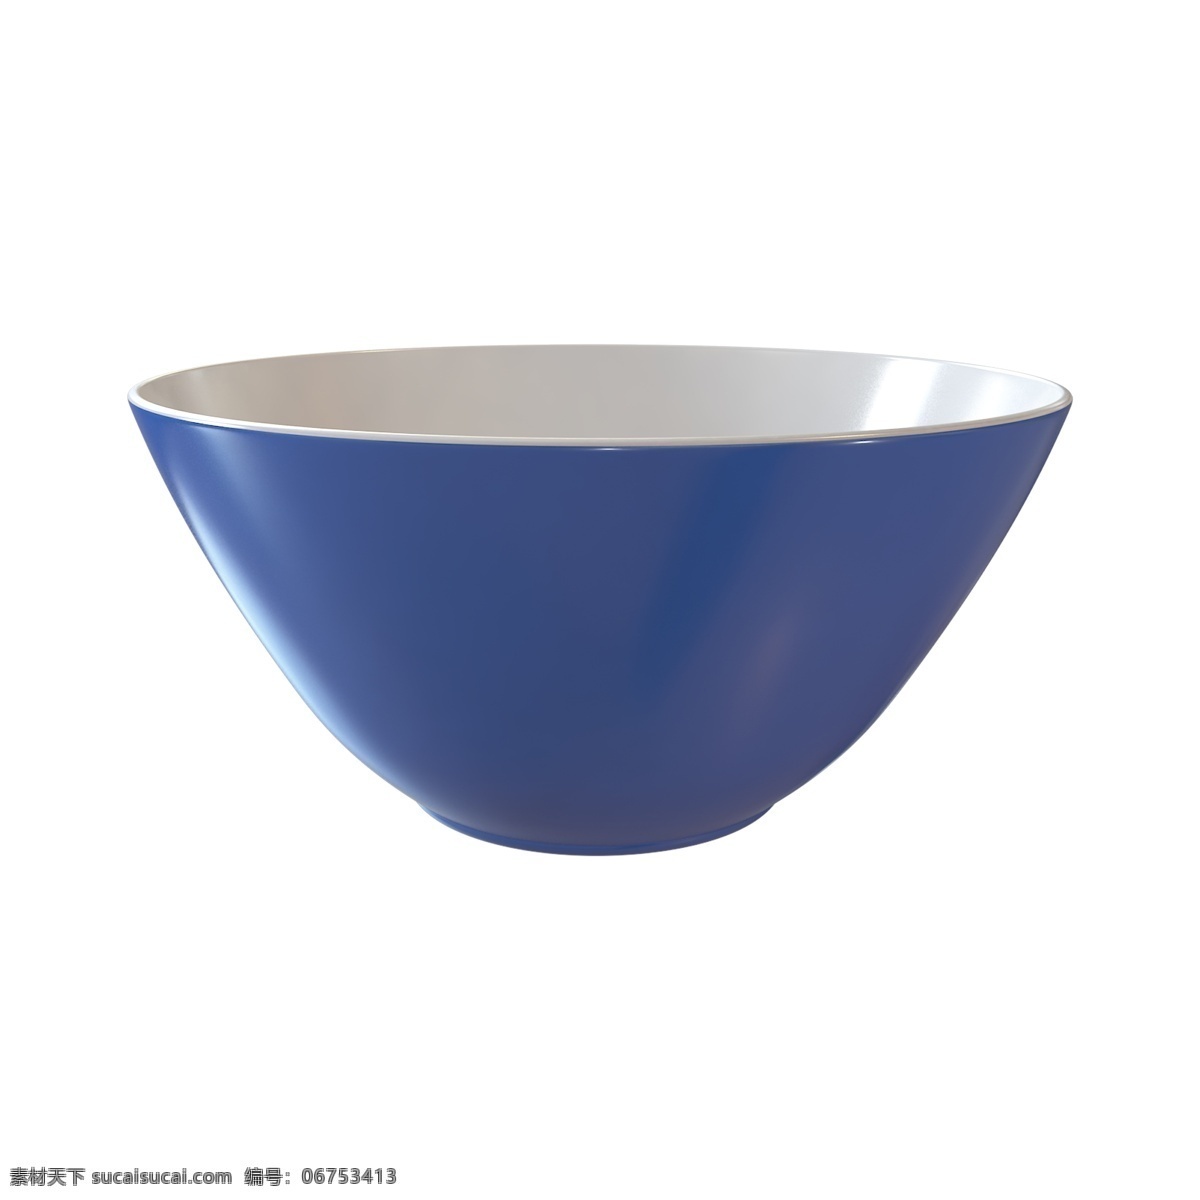 蓝色 立体 大碗 配 图 碗 蓝色碗 白色 餐具 仿真 写实3d c4d 实物 简约 时尚风